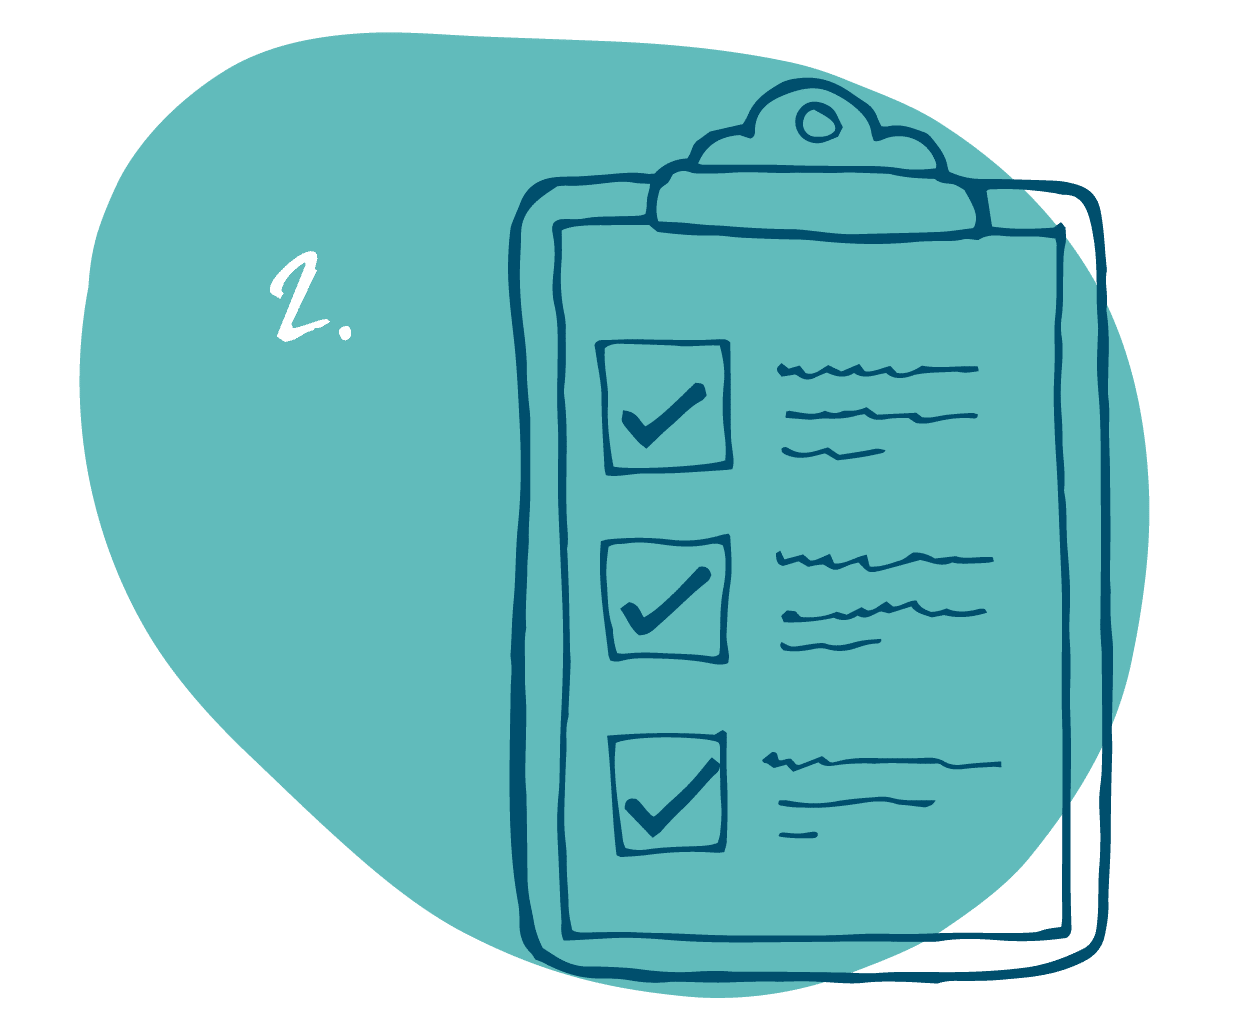 Checklist icon with blue blob design